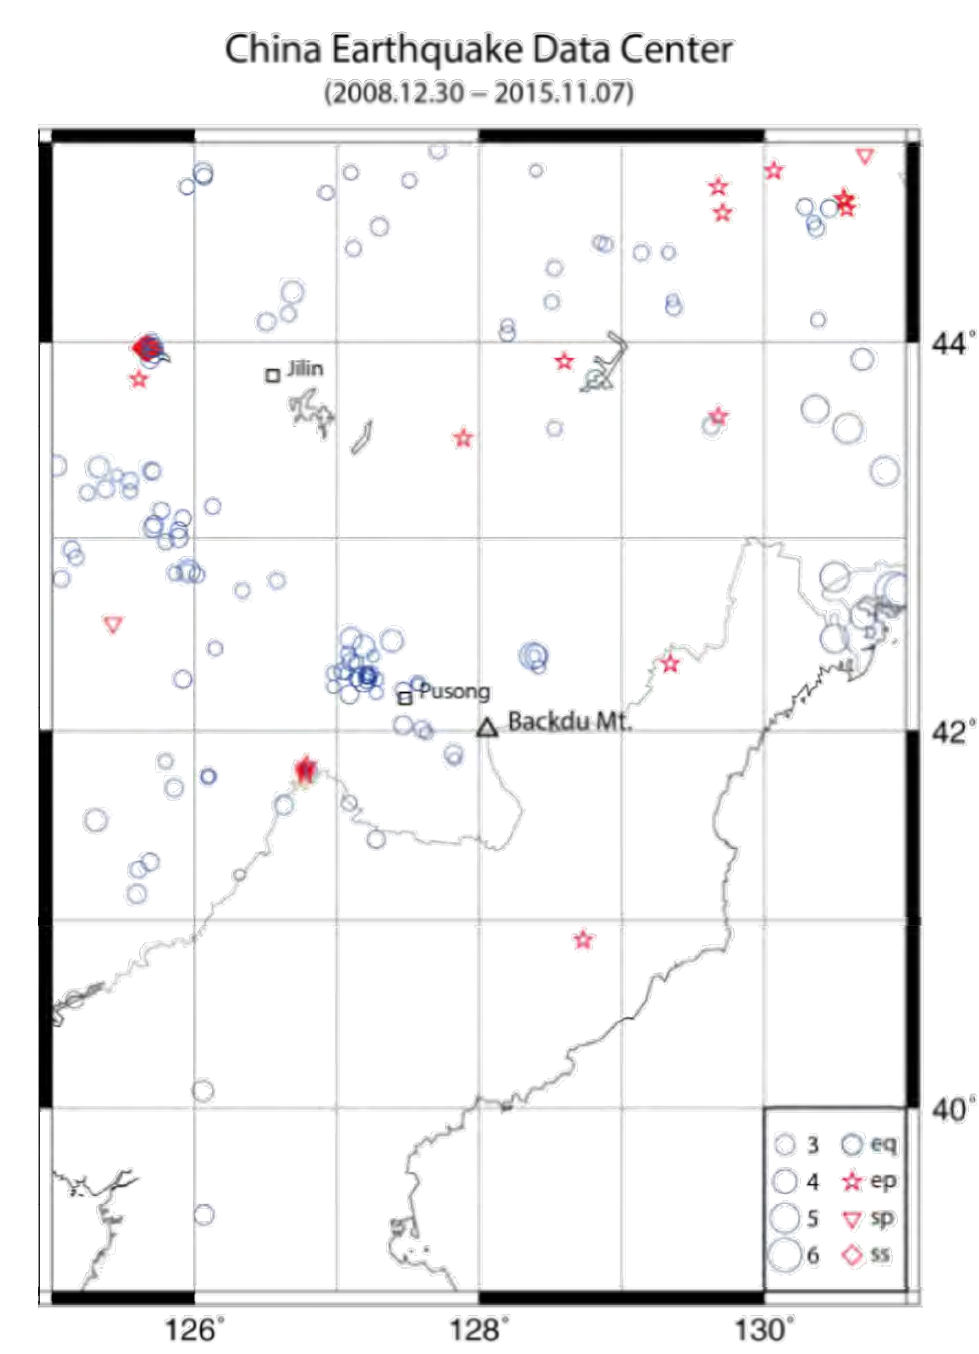 중국국가지진목록에 의한 2008년부터 2015녀 11월까지 백두산 및 주변부에서의 진앙분포도. 청색원은 자연지진, 적색별(ep)은 폭발, 적색 역삼각형(sp)은 폭발추정, 적색 마름모(ss)는 붕괴형 지진임